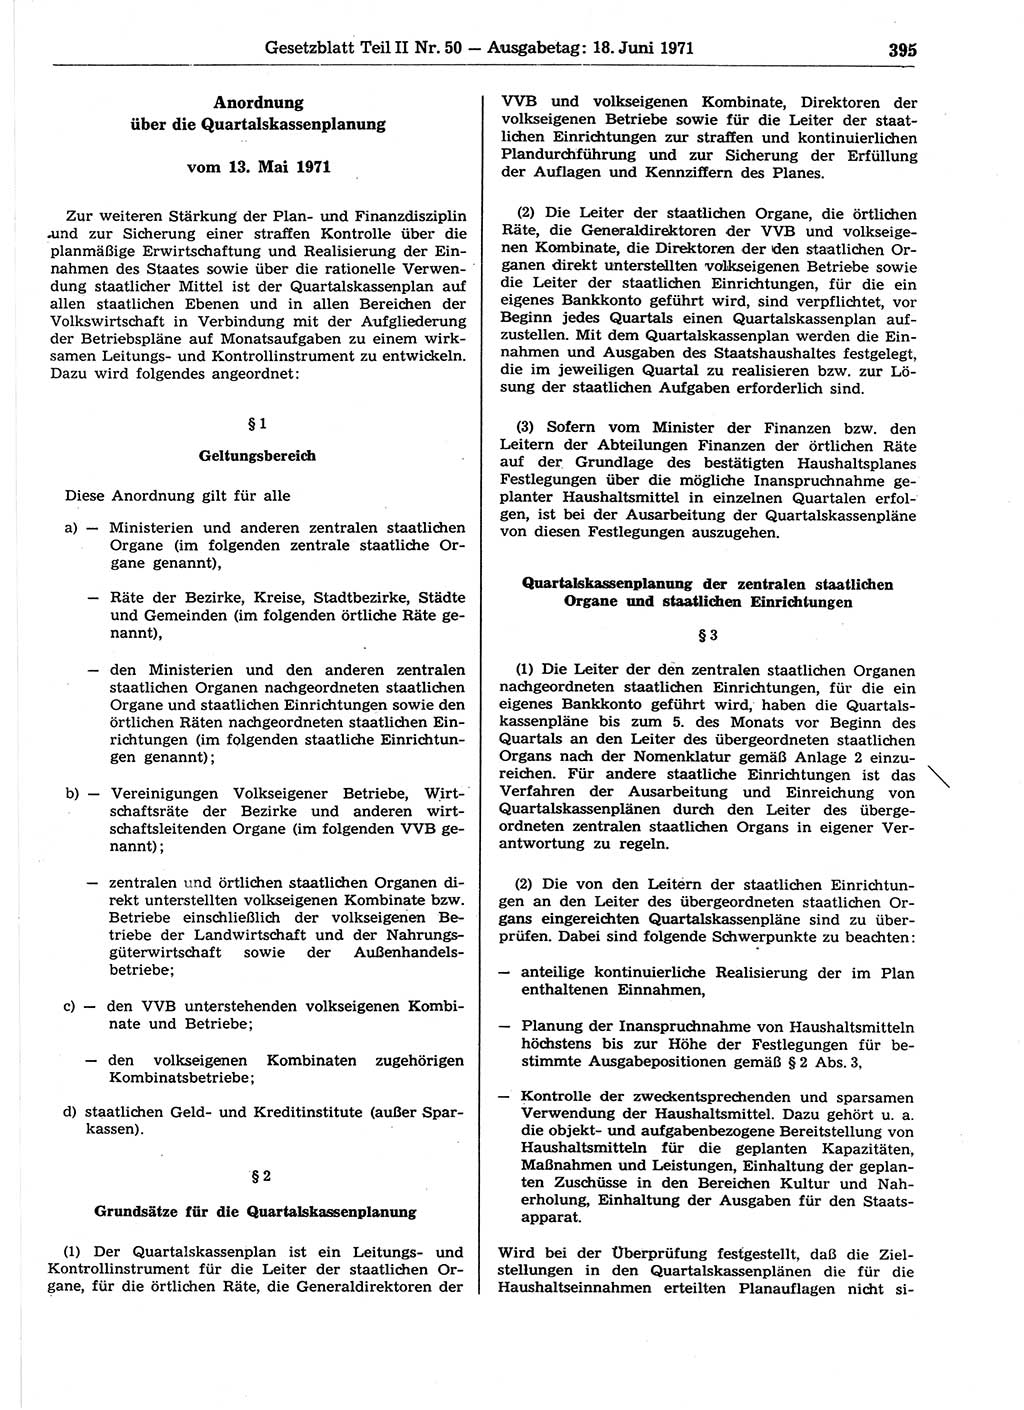 Gesetzblatt (GBl.) der Deutschen Demokratischen Republik (DDR) Teil ⅠⅠ 1971, Seite 395 (GBl. DDR ⅠⅠ 1971, S. 395)